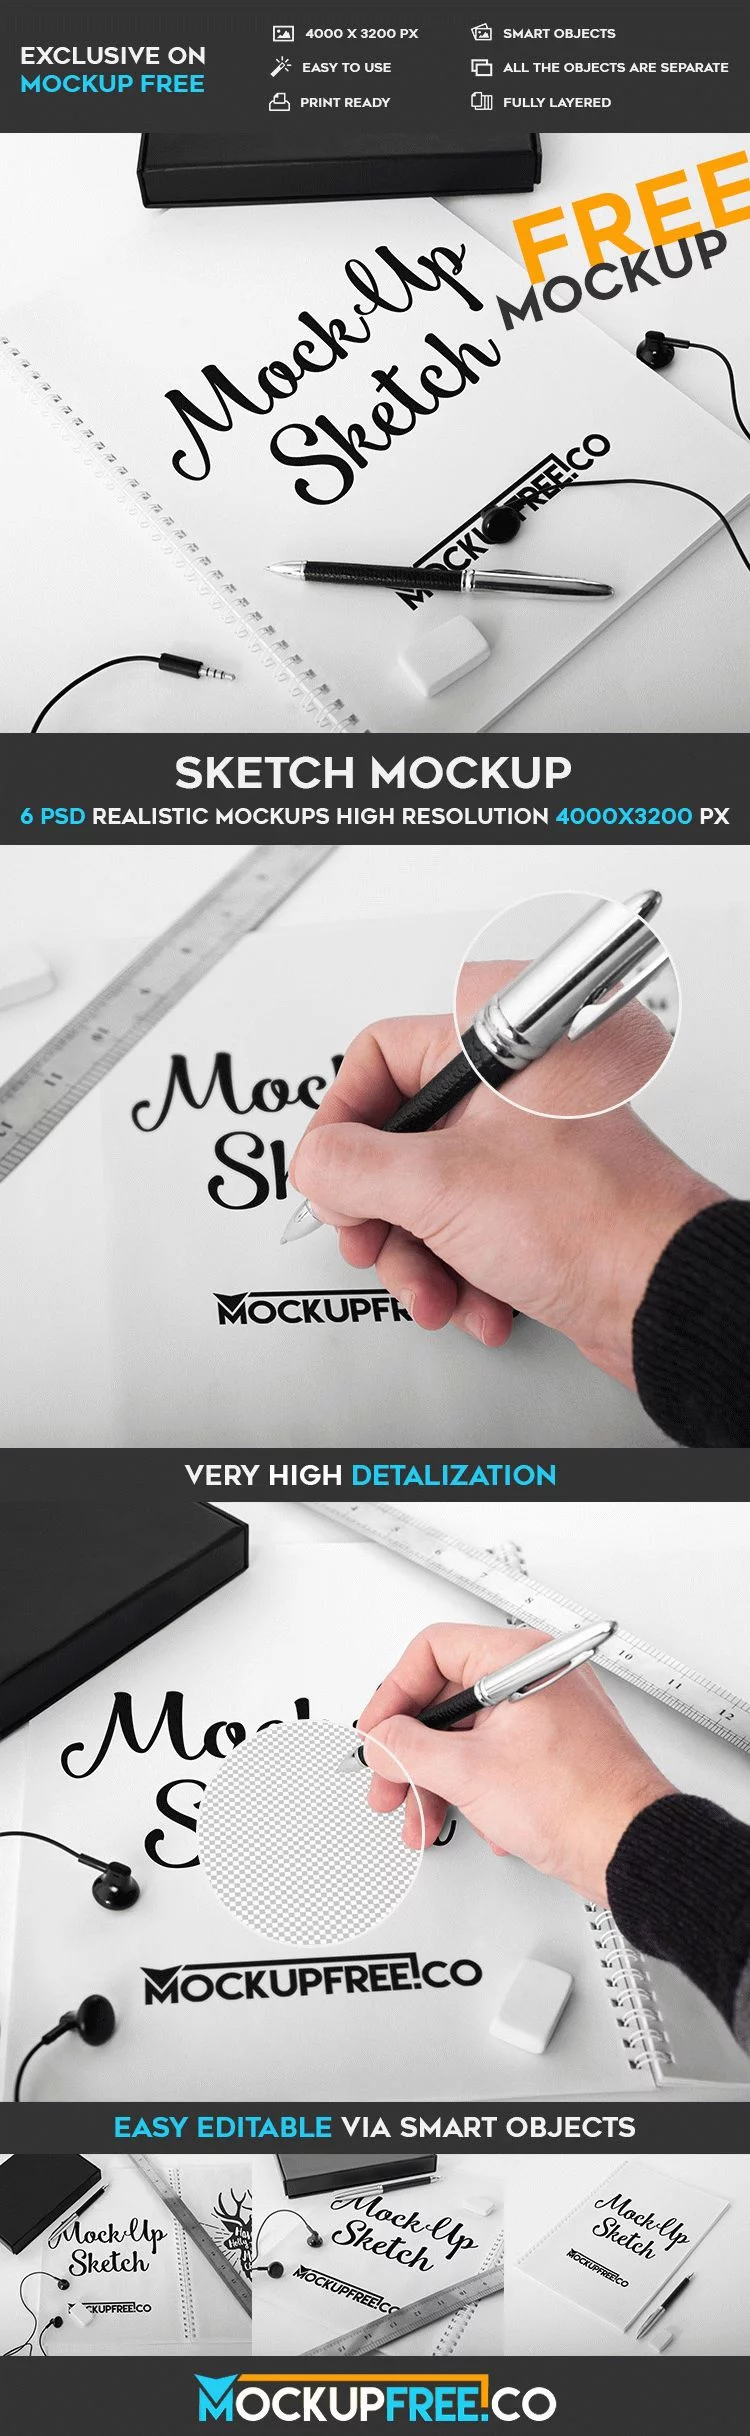 15 Clean Drawing Mockup PSD Templates  Mockuptree